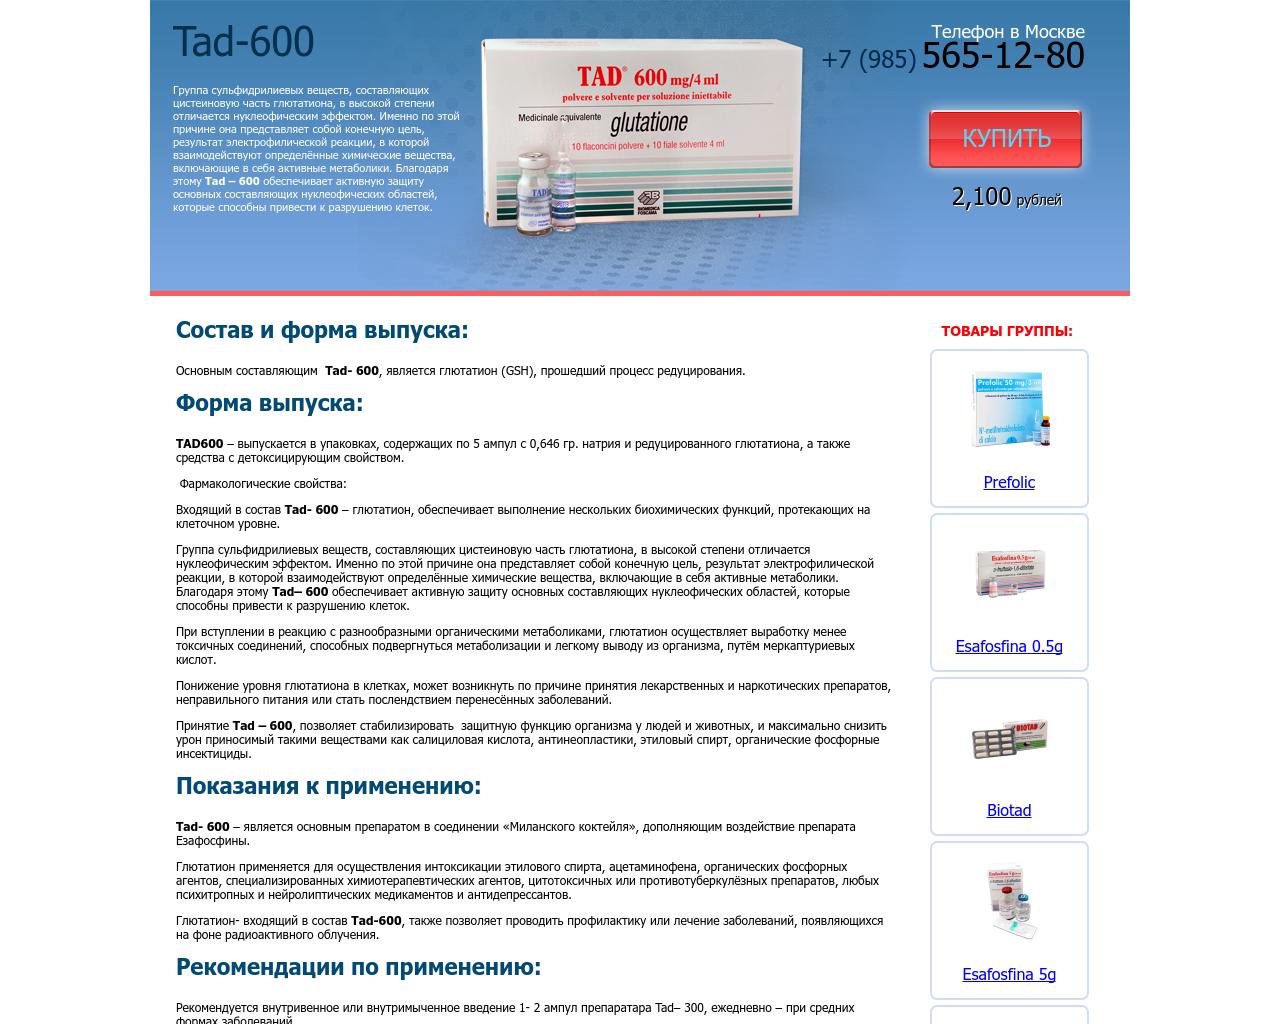 Изображение сайта tad600.ru в разрешении 1280x1024